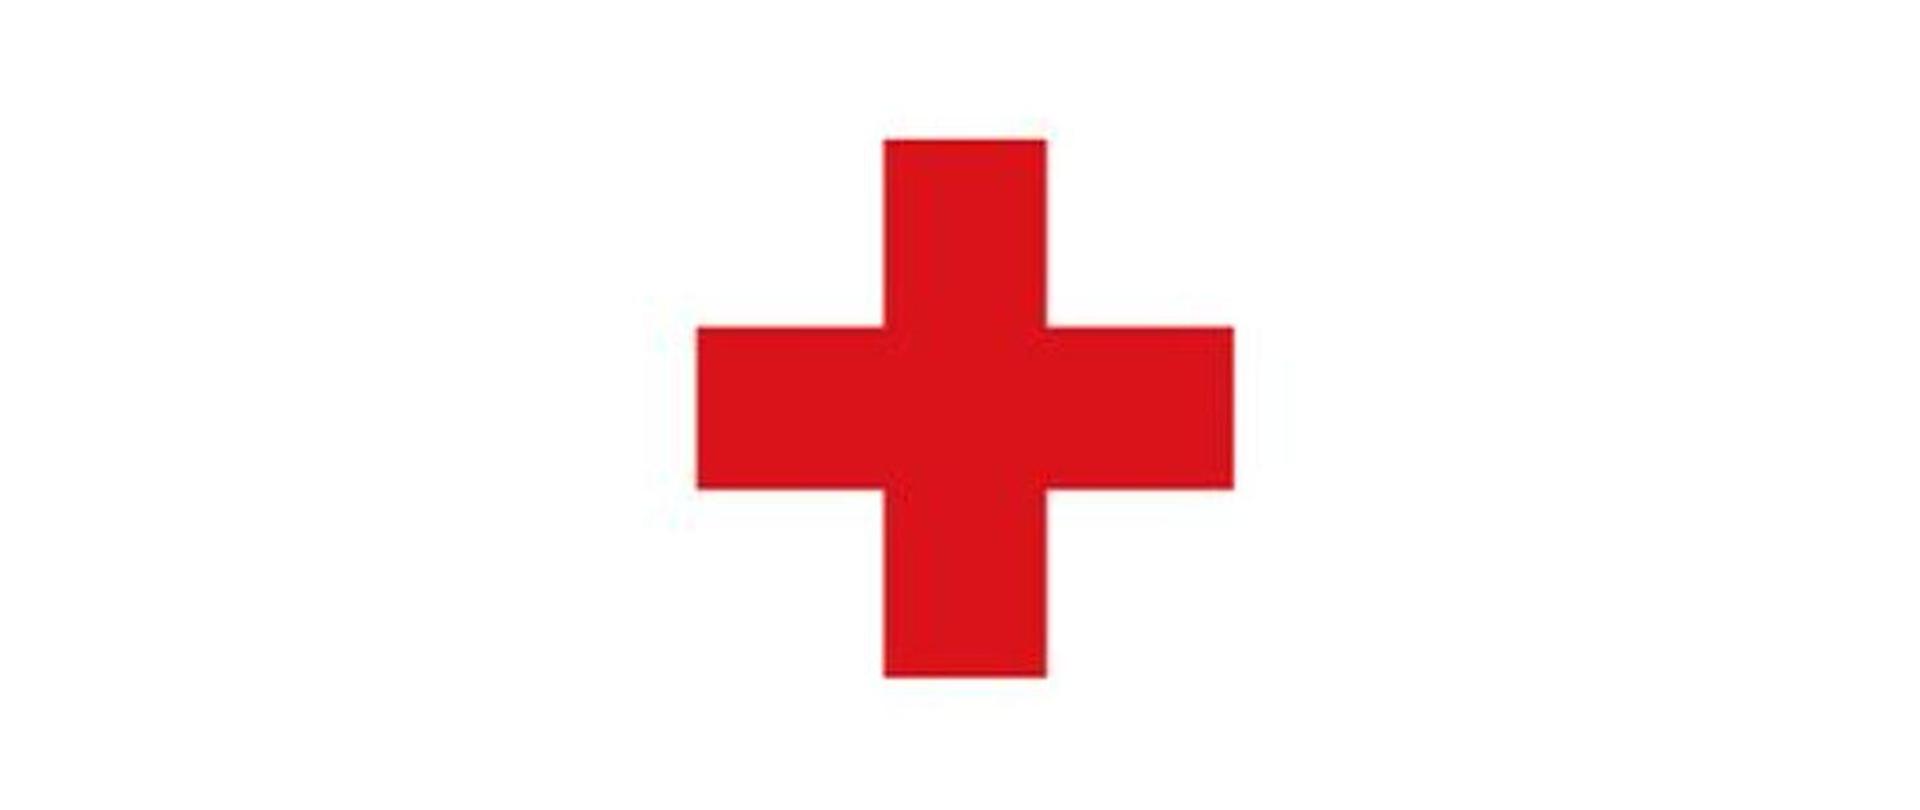 W związku z przypadkami nadużywania przez podmioty nieuprawnione znaku czerwonego krzyża, należy wskazać, że prawo do używania znaku czerwonego krzyża jako rozpoznawczego i ochronnego przysługuje tylko w przypadkach i na zasadach określonych w międzynarodowym prawie humanitarnym